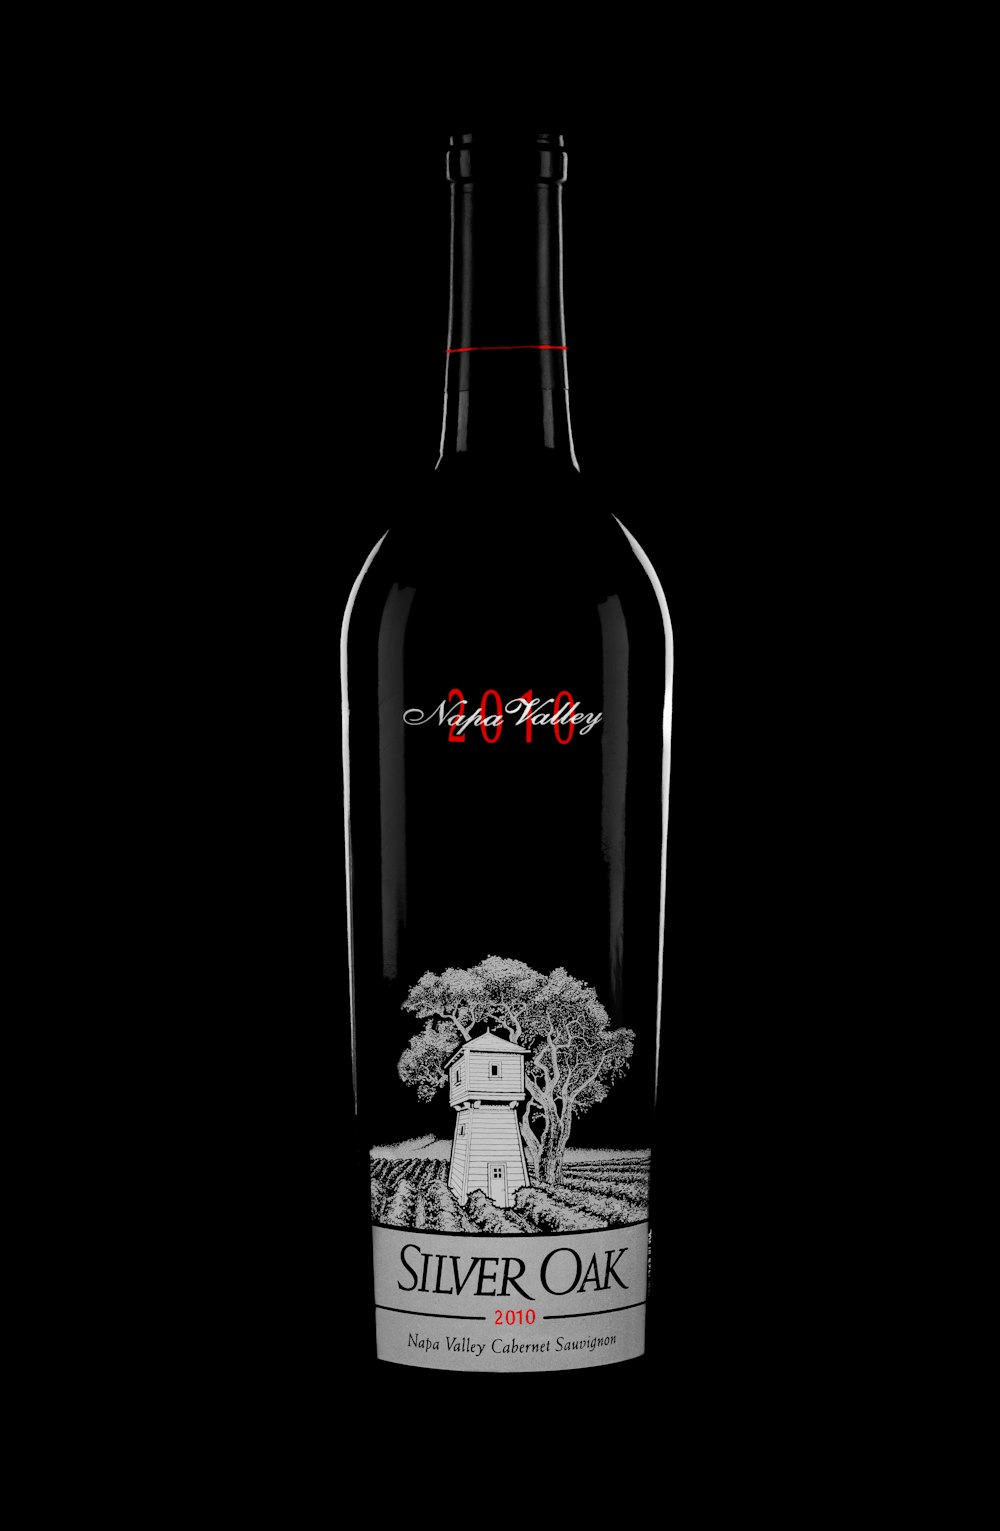 a bottle of silver oak wine on a black background